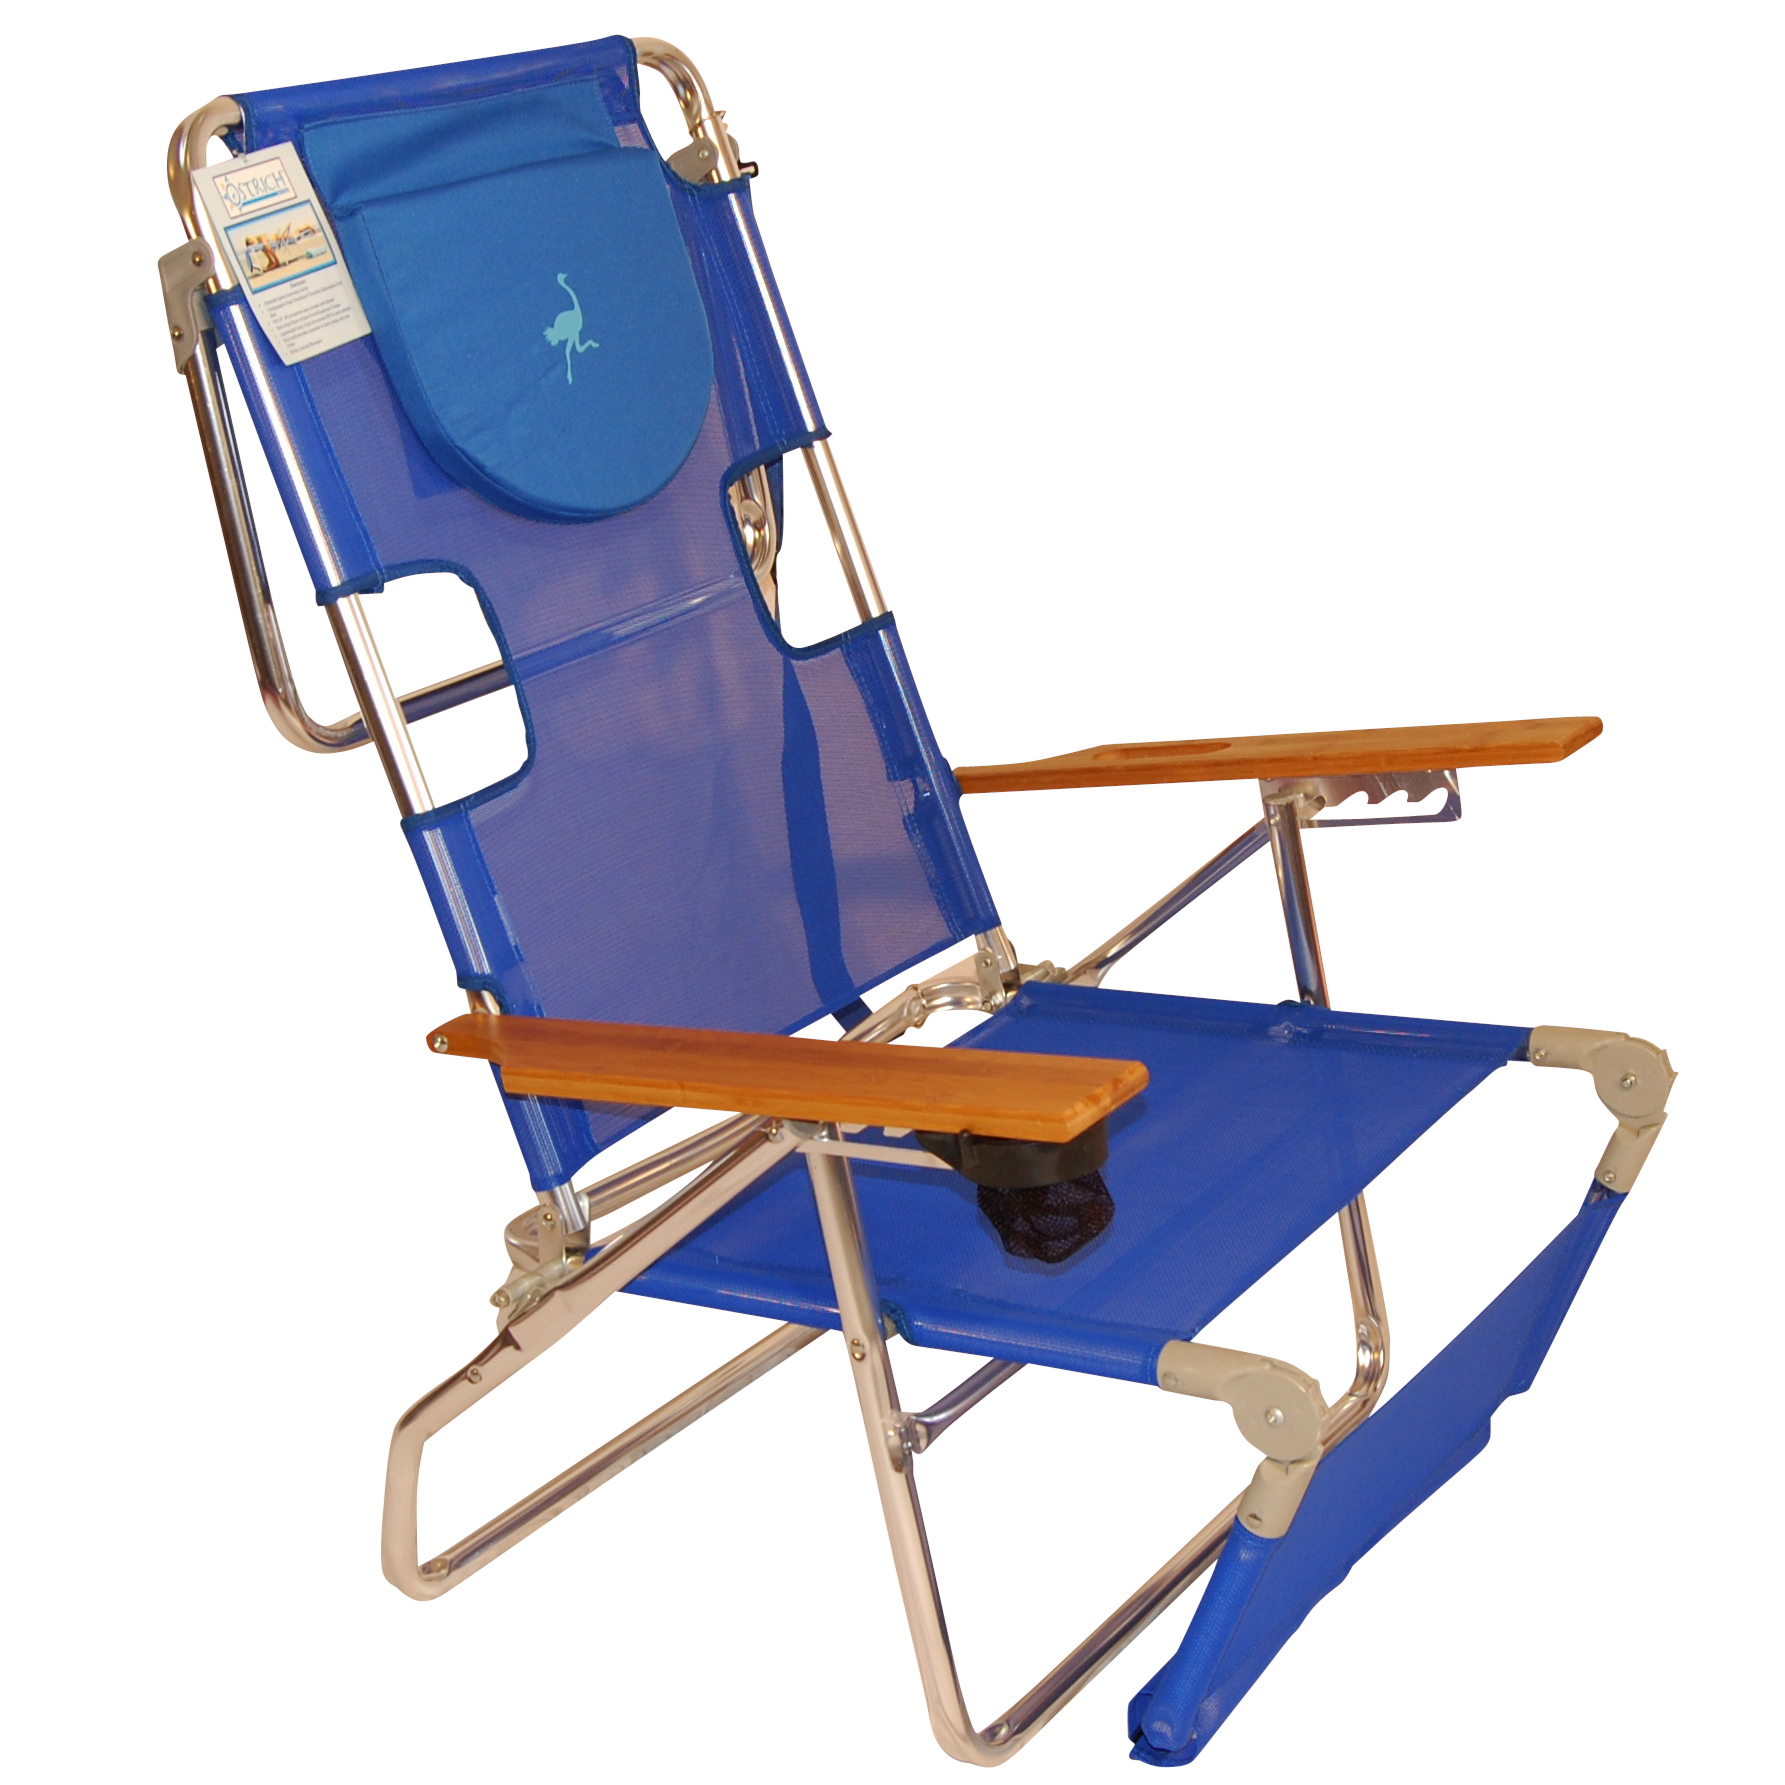 ostrich 3in1 beach chair